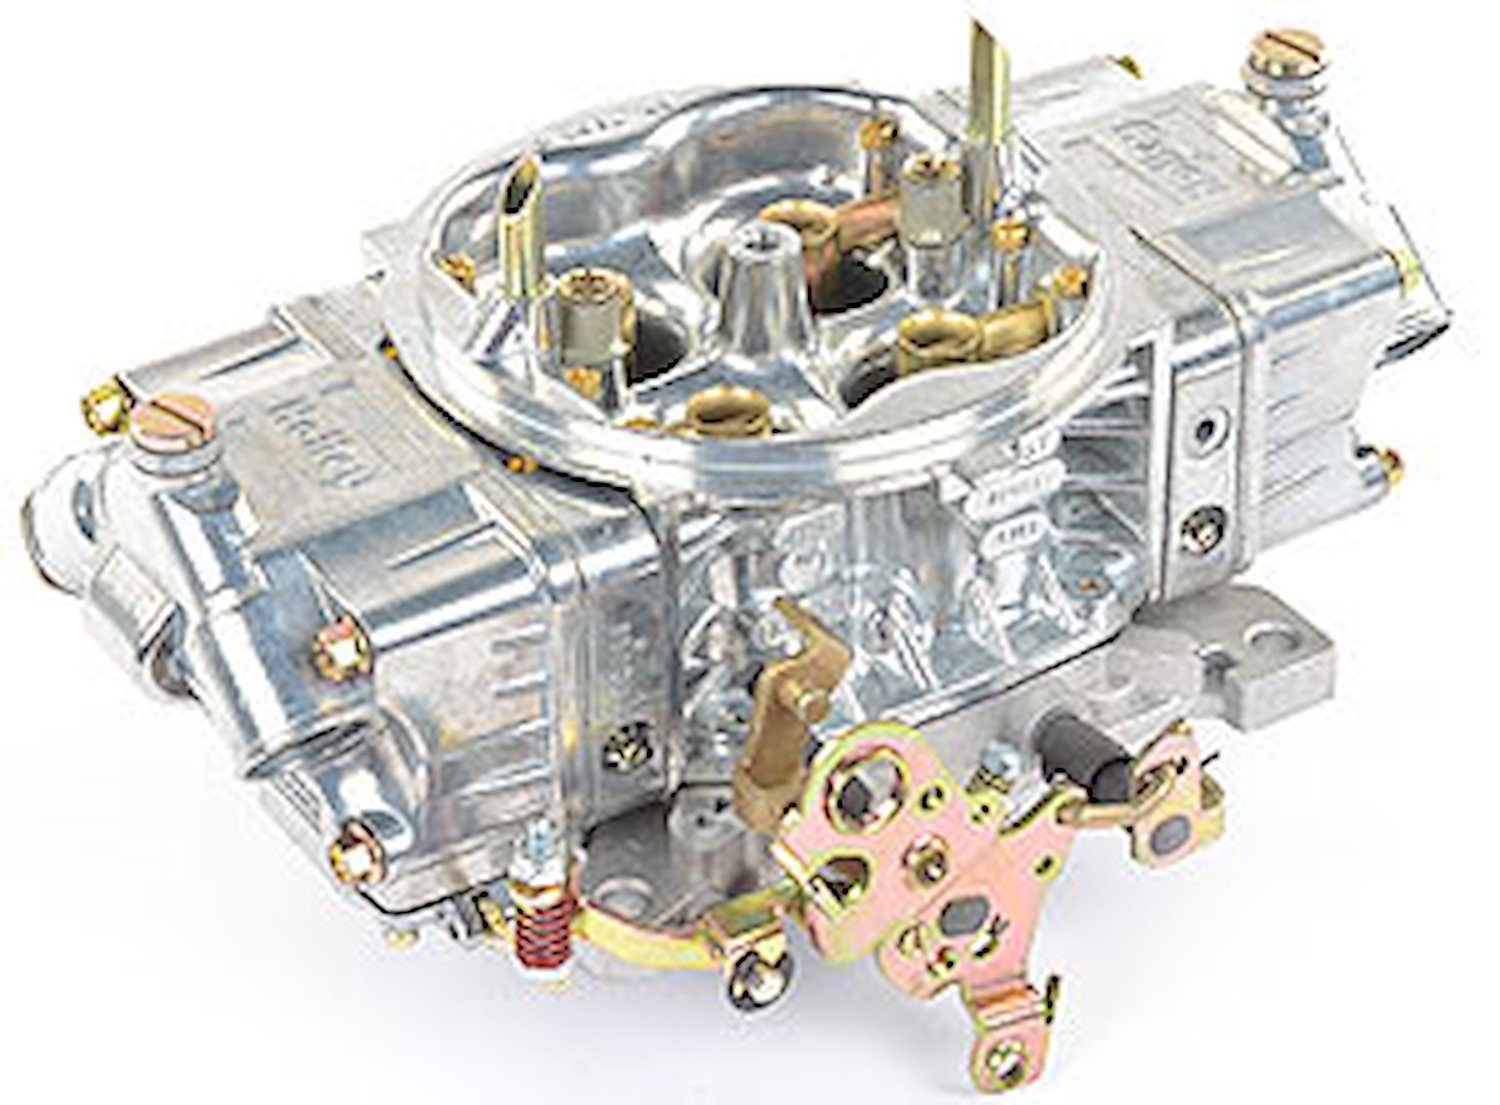 0-82751 Street HP Carburetor 750 cfm